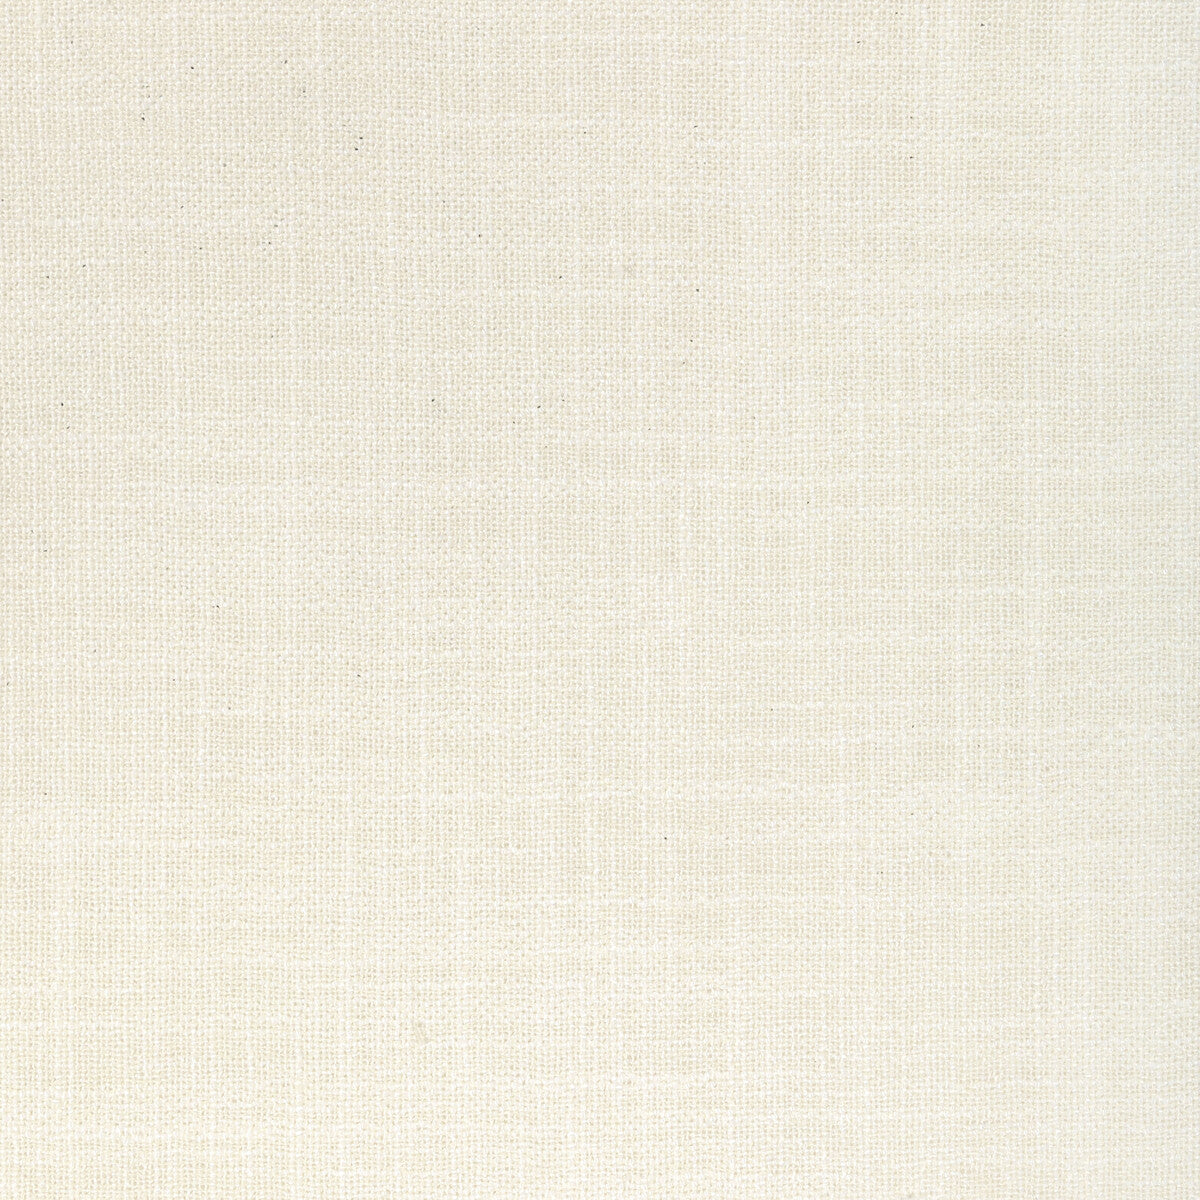 Kravet Basics fabric in 4930-1 color - pattern 4930.1.0 - by Kravet Basics